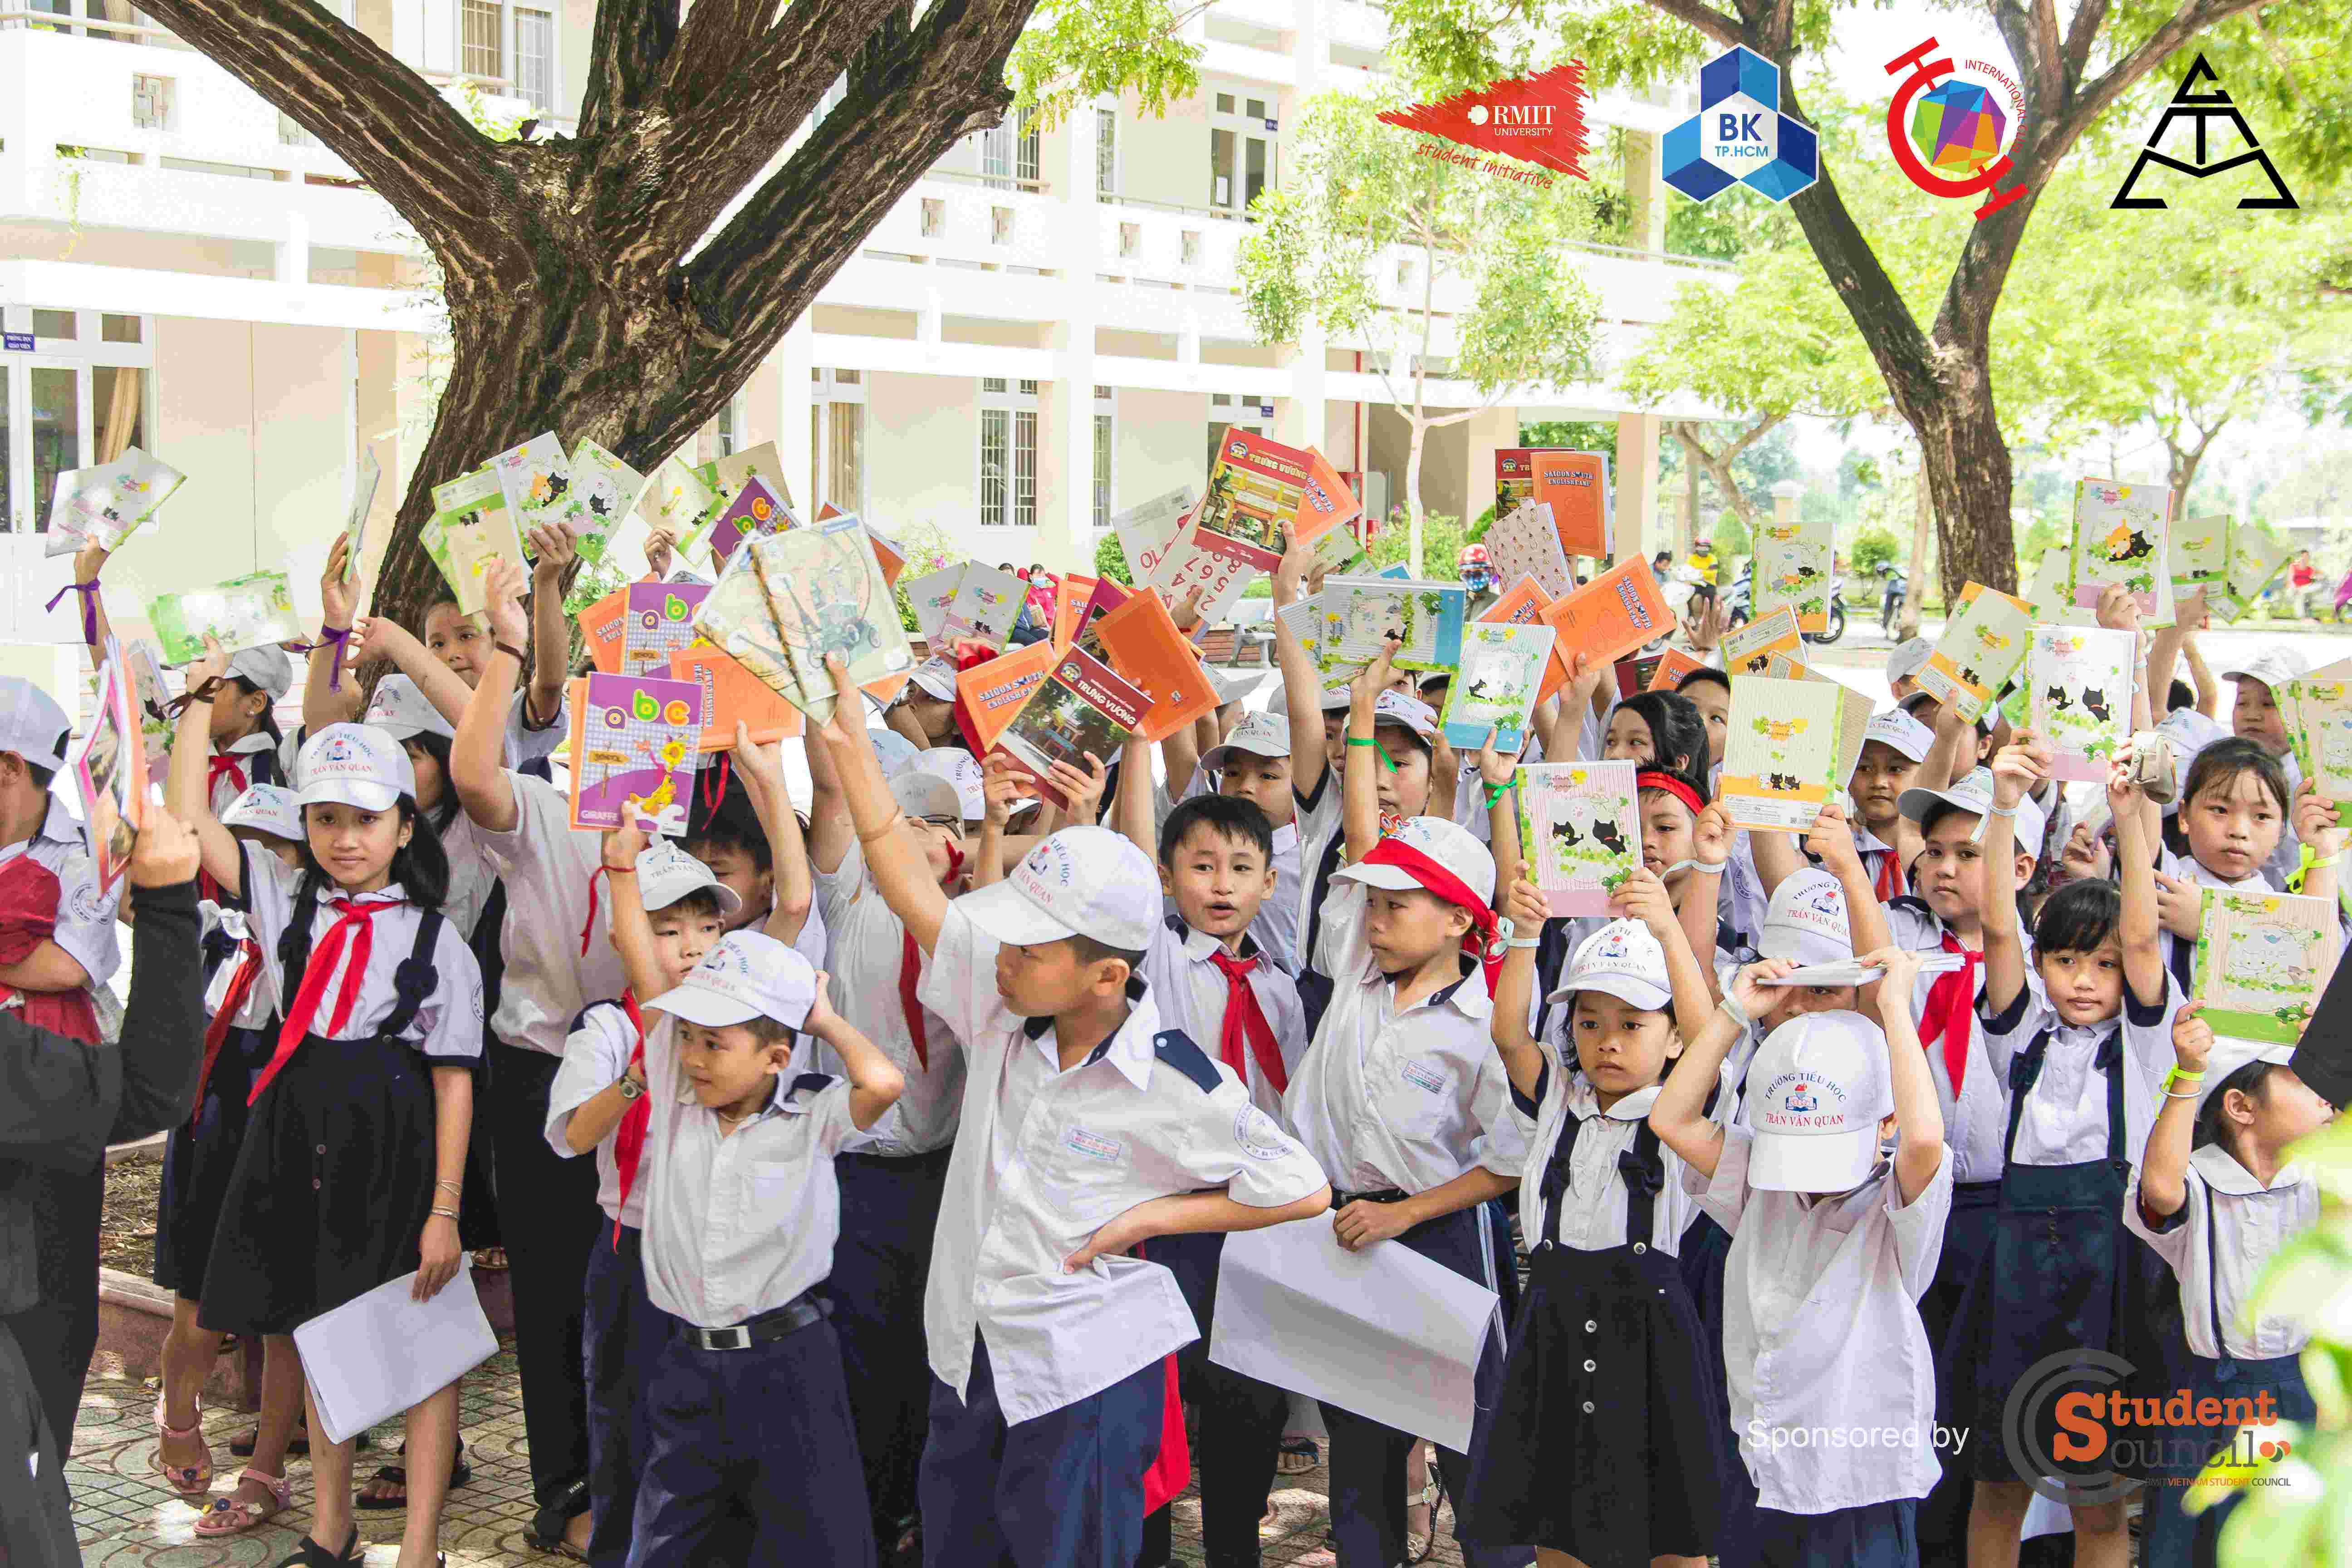 Đây là buổi tựu trường đáng nhớ với các em học sinh trường tiểu học Trần Văn Quan.